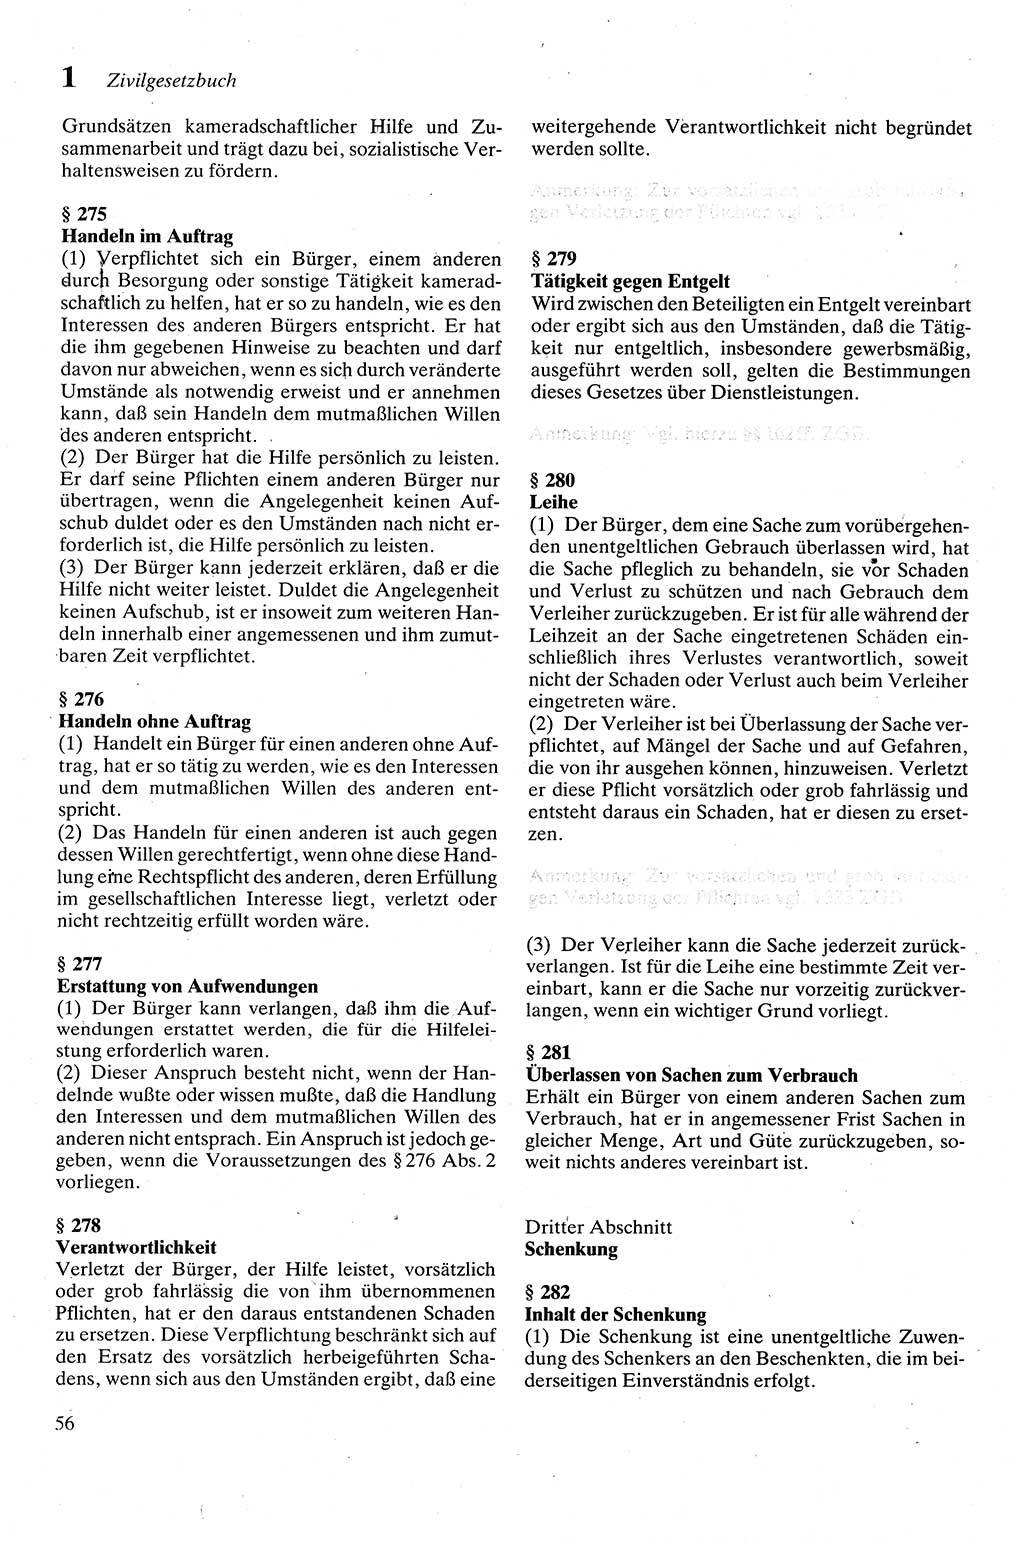 Zivilgesetzbuch (ZVG) sowie angrenzende Gesetze und Bestimmungen [Deutsche Demokratische Republik (DDR)] 1975, Seite 56 (ZGB Ges. Best. DDR 1975, S. 56)